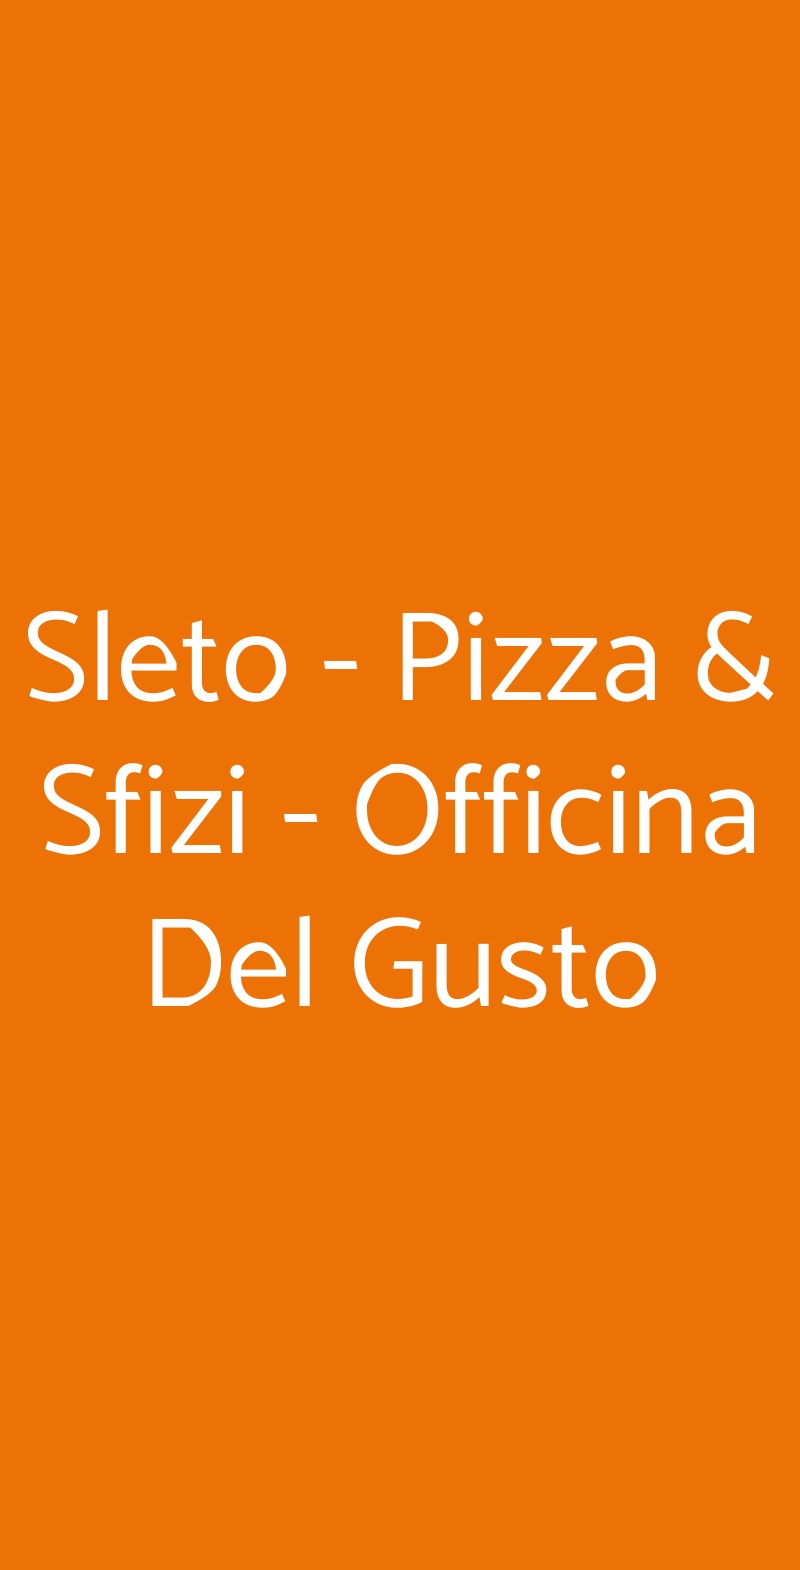 Sleto - Pizza & Sfizi - Officina Del Gusto Catania menù 1 pagina